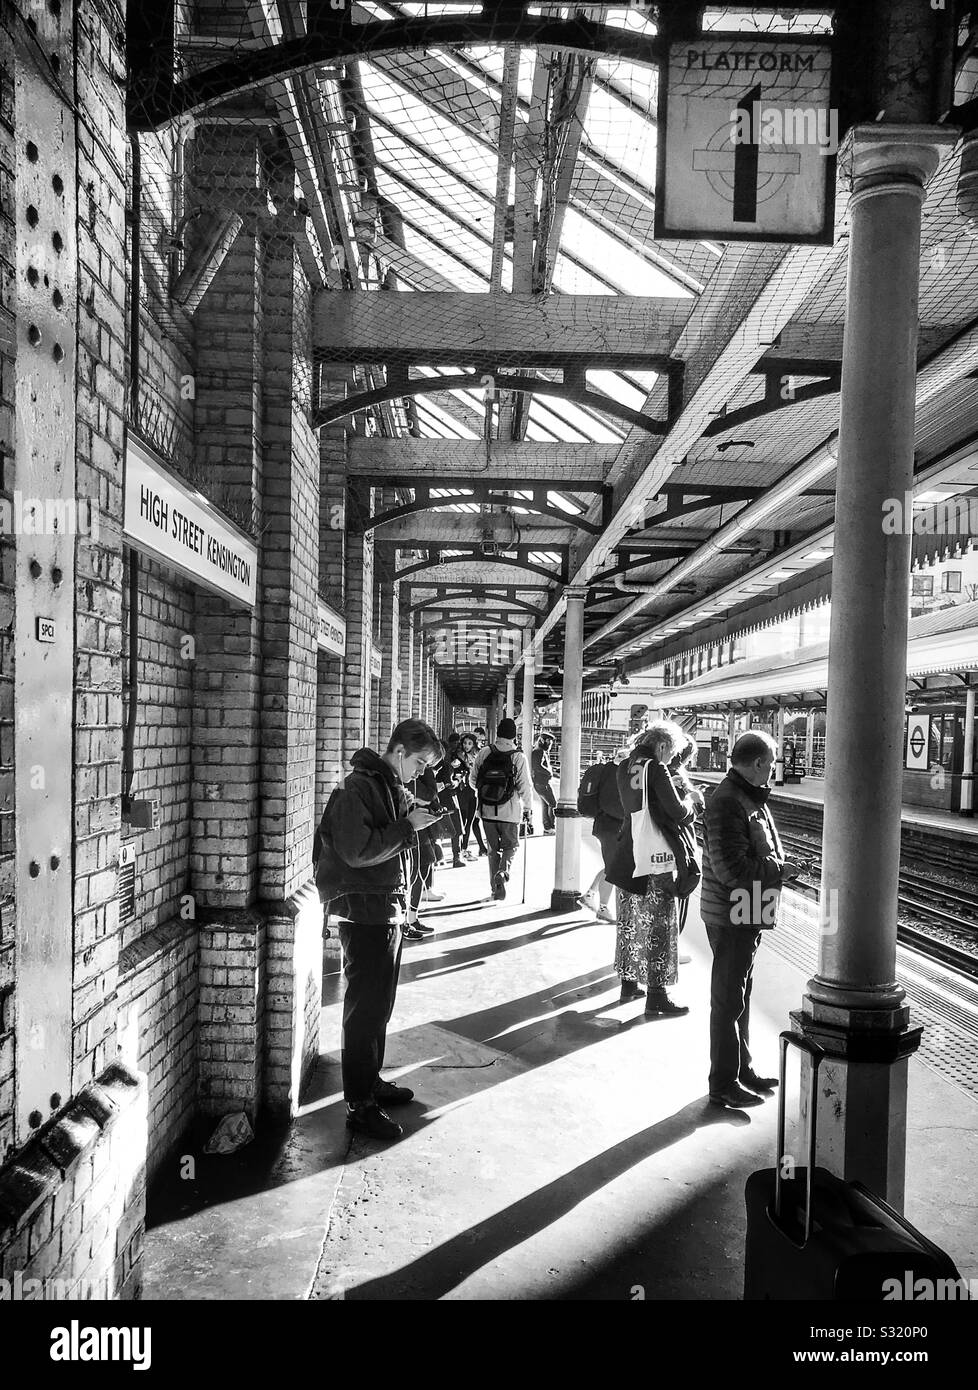 Piattaforma 1 della metropolitana di High Street Kensington Station, con i passeggeri in attesa per il prossimo treno. La luminosa luce del sole proietta ombre lunghe di questa scena, acquisiti in bianco e nero. Foto Stock